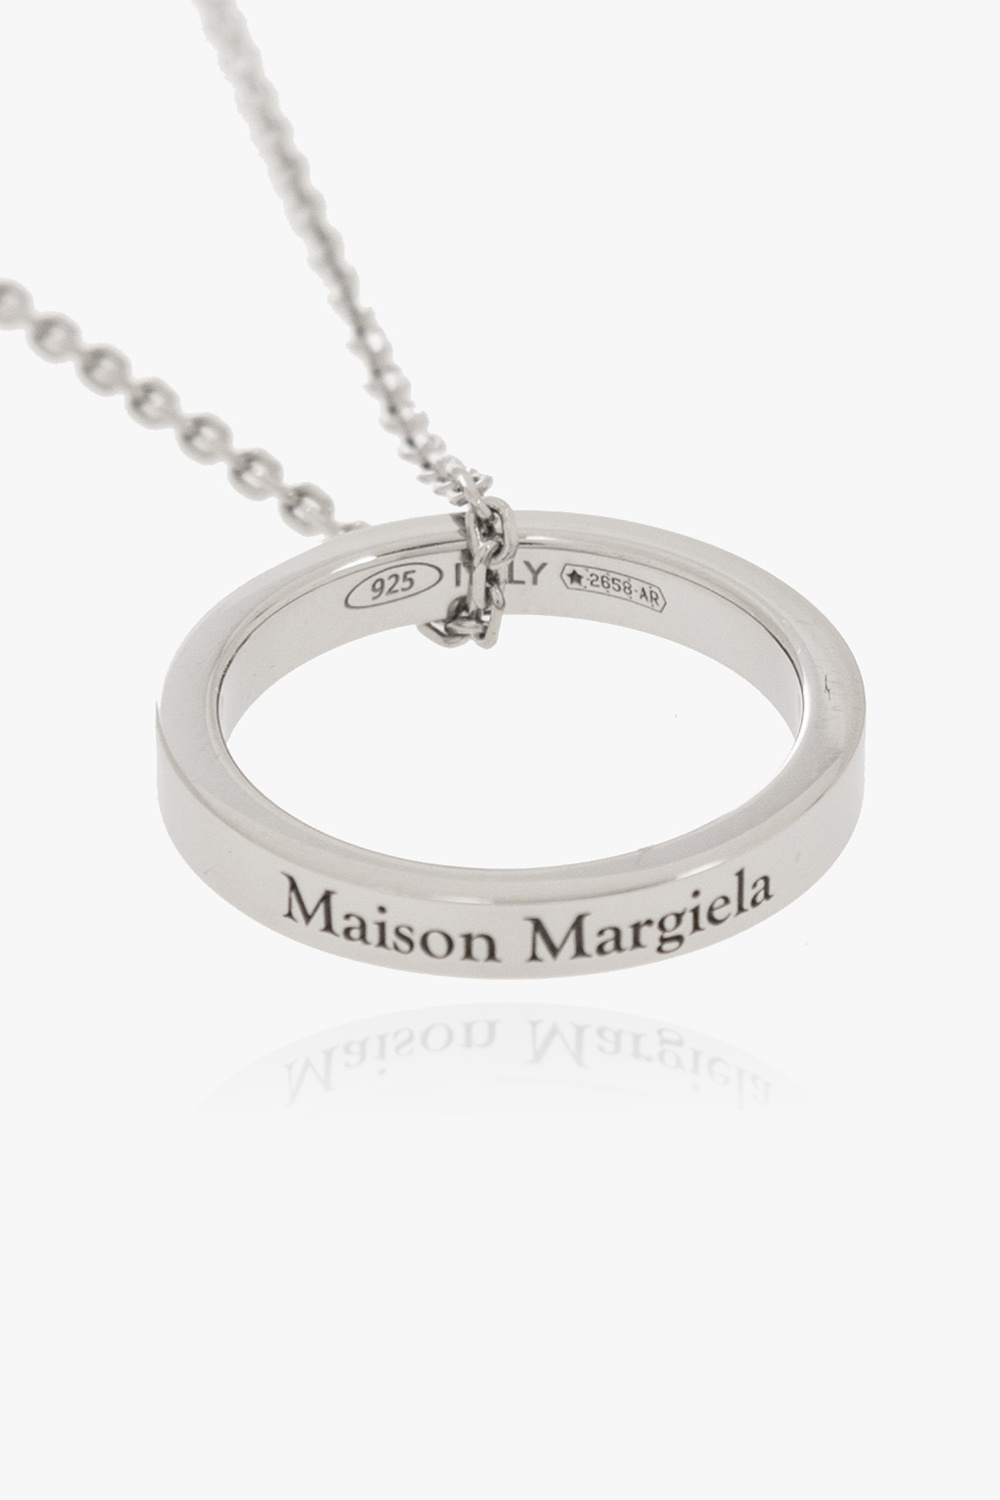 Maison Margiela Silver necklace